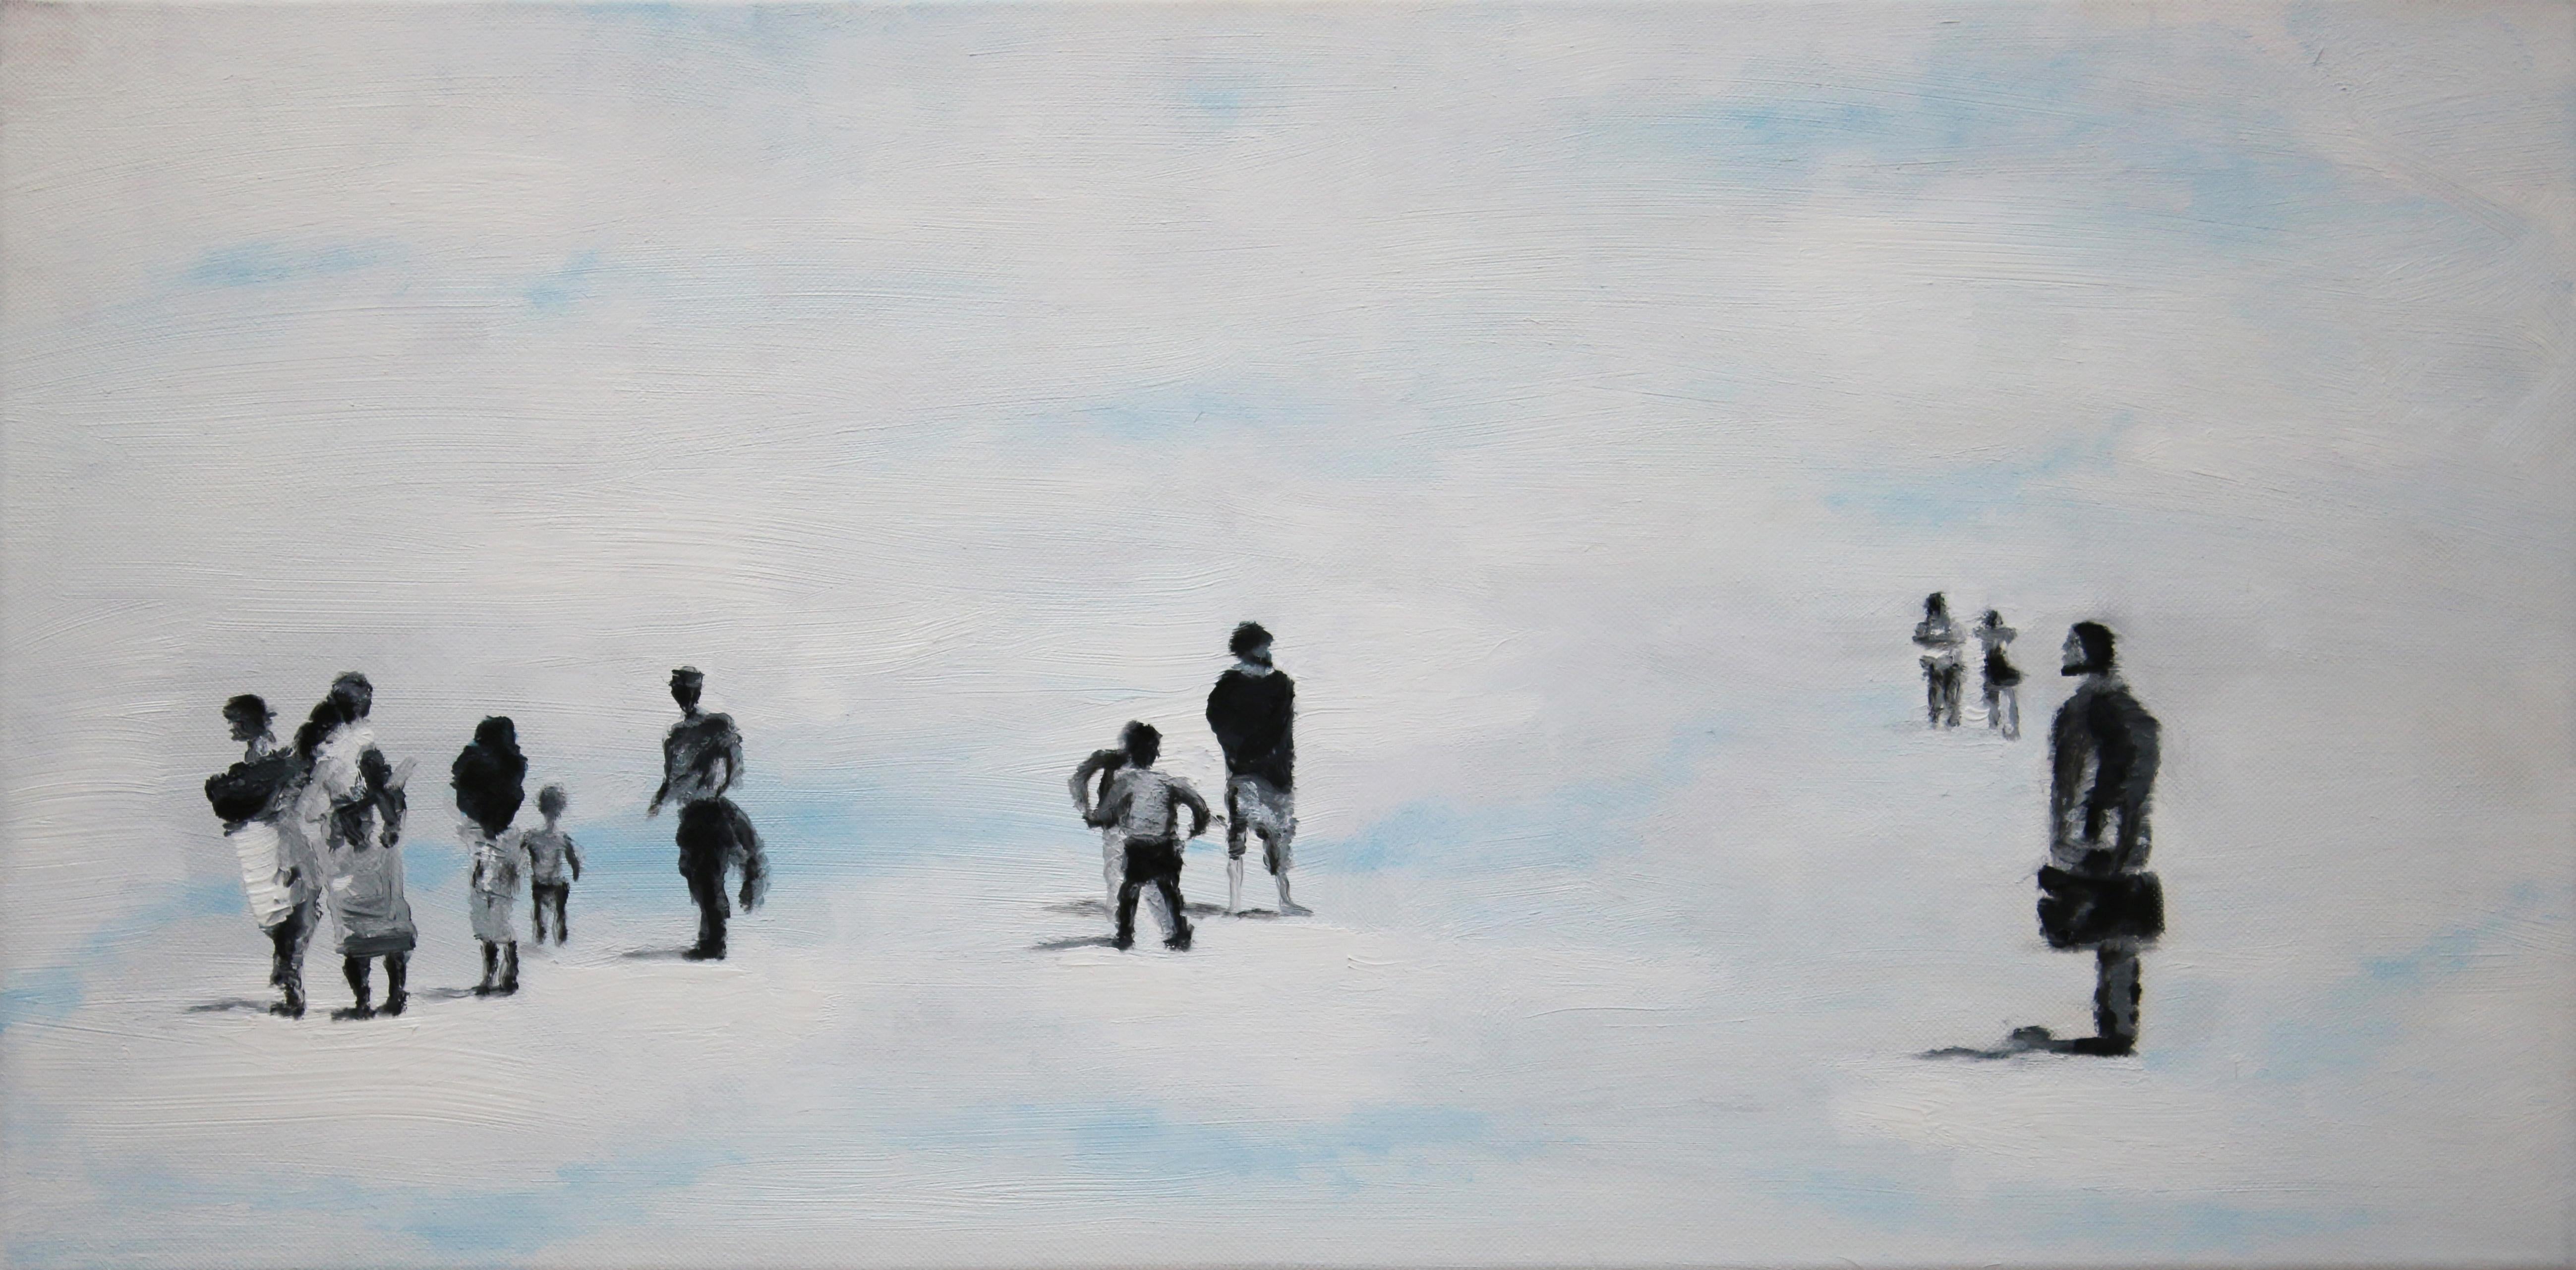 Groupe dans les nuages - scène figurative contemporaine, peinture de personnes dans les nuages